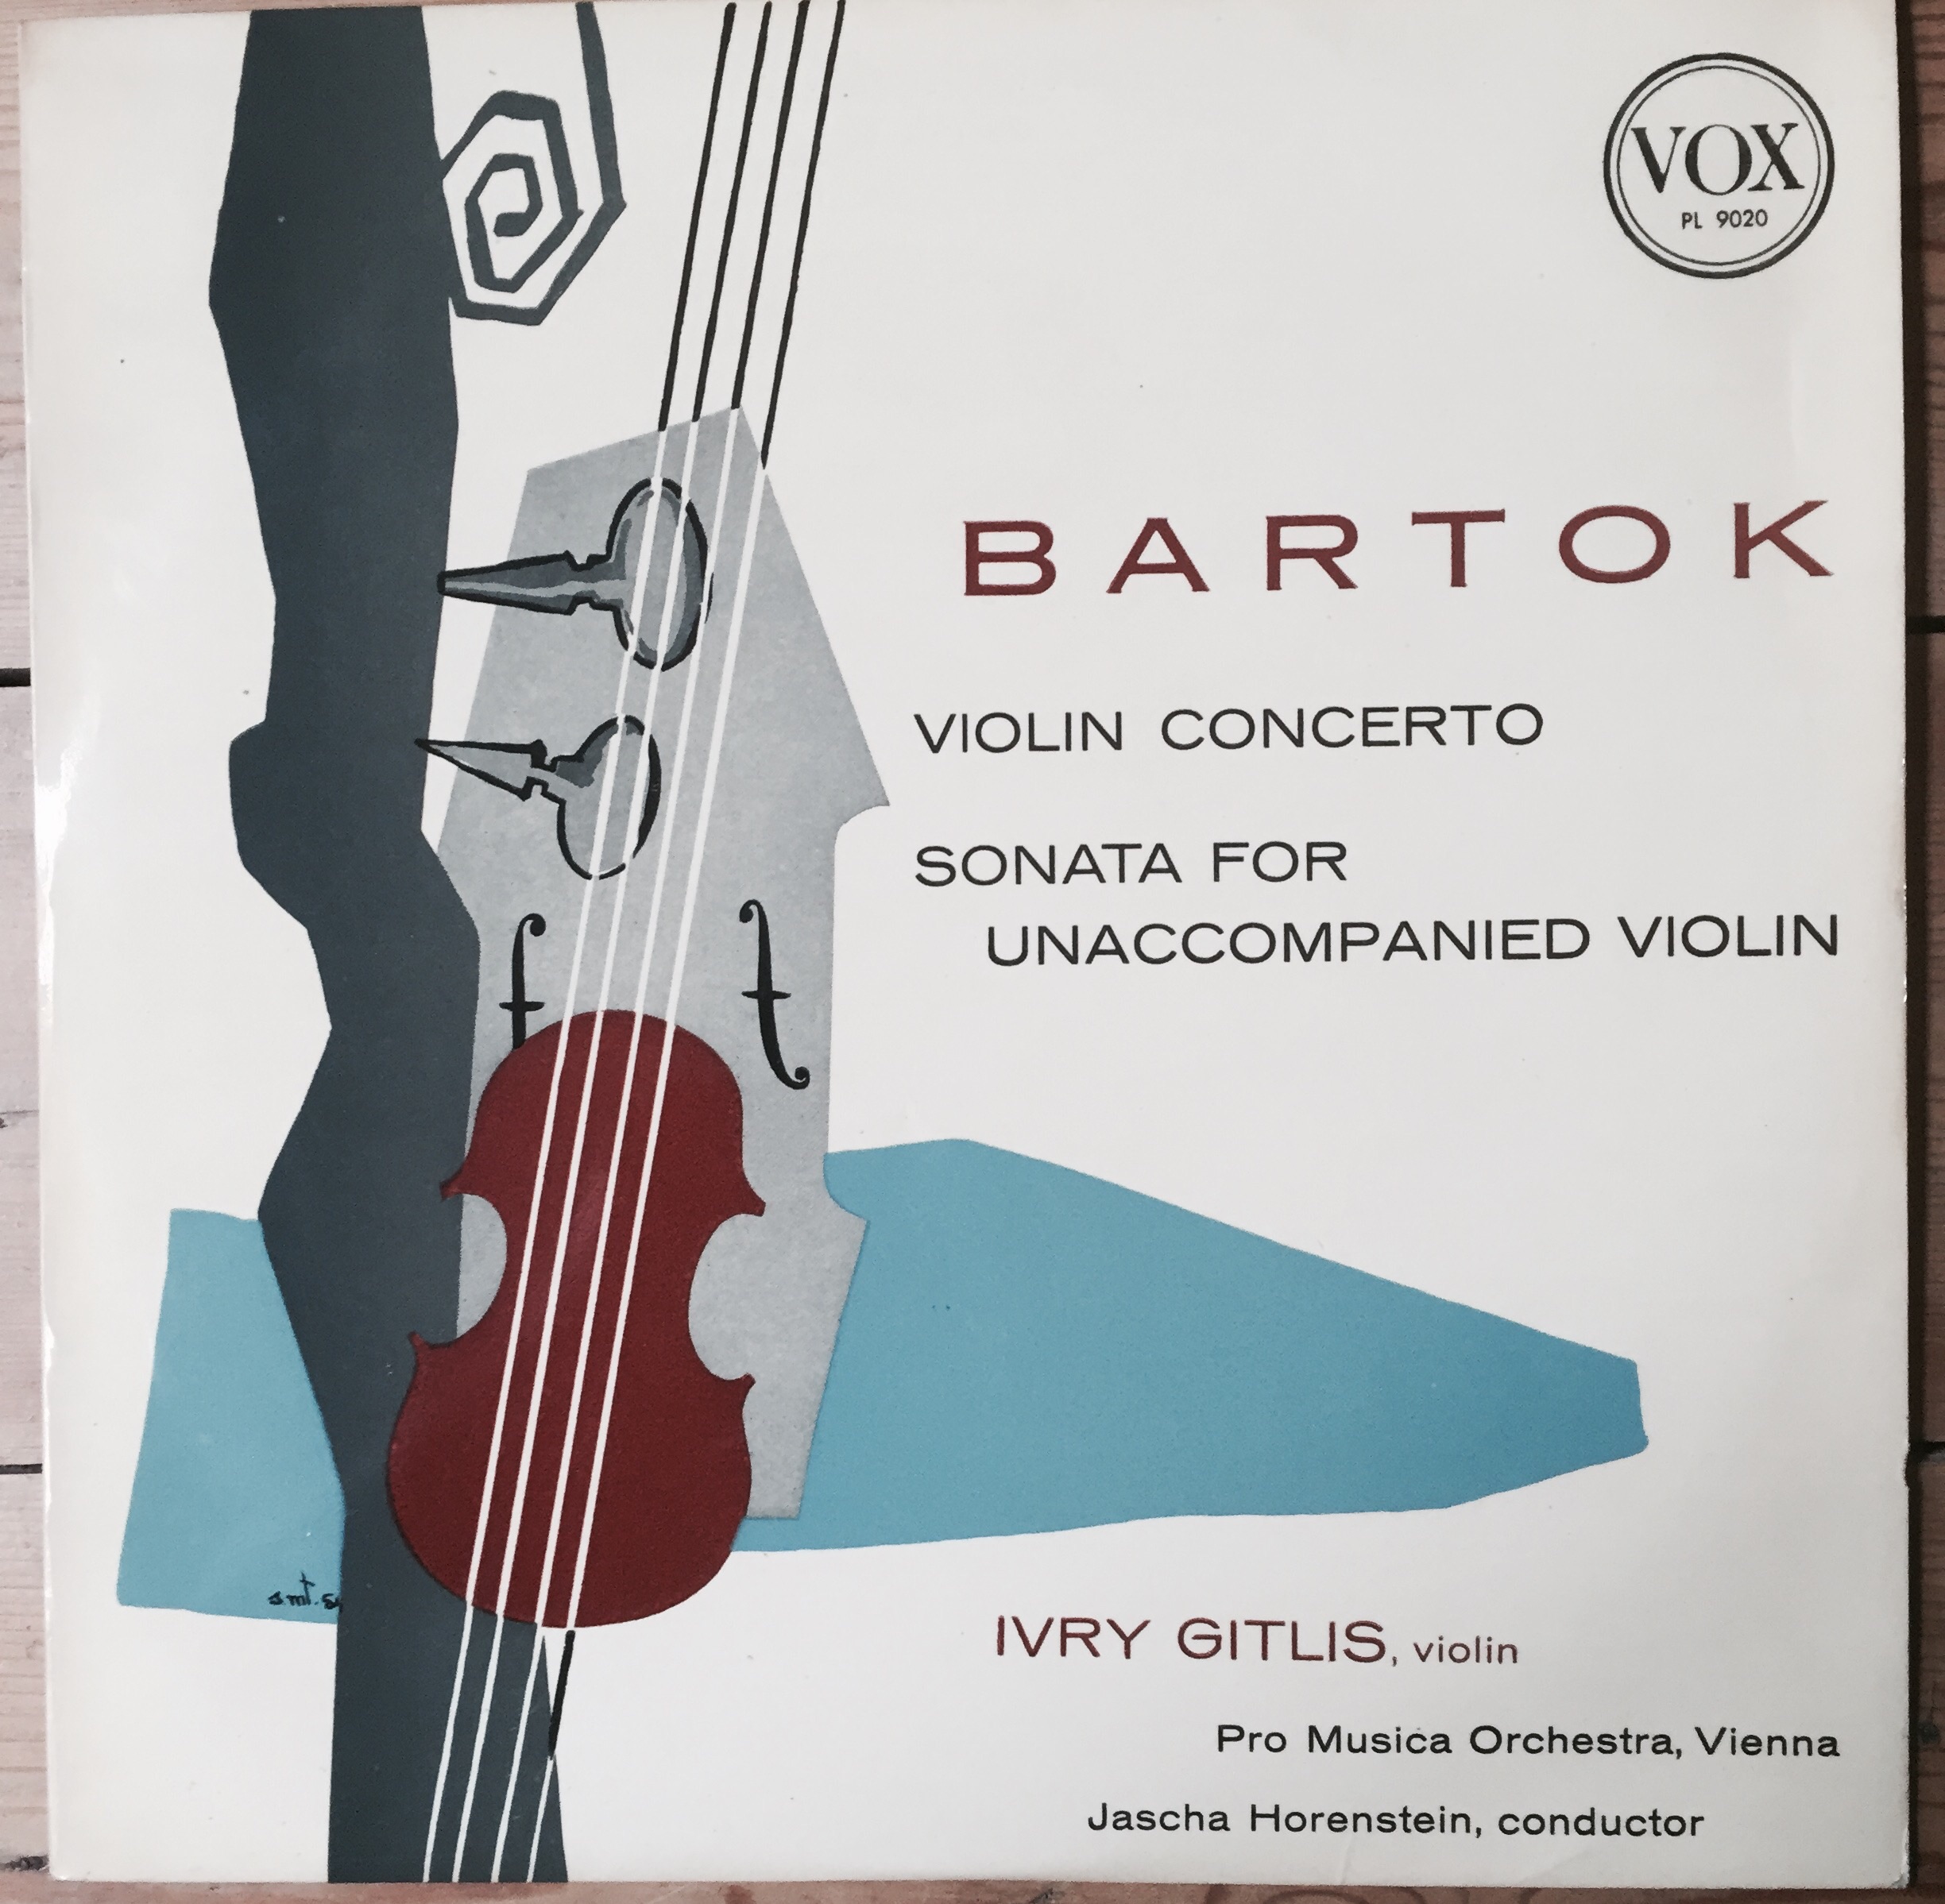 PL 9020 Bartok Violin Concerto / Sonata For Unaccompanied Violin / Ivry Gitlis